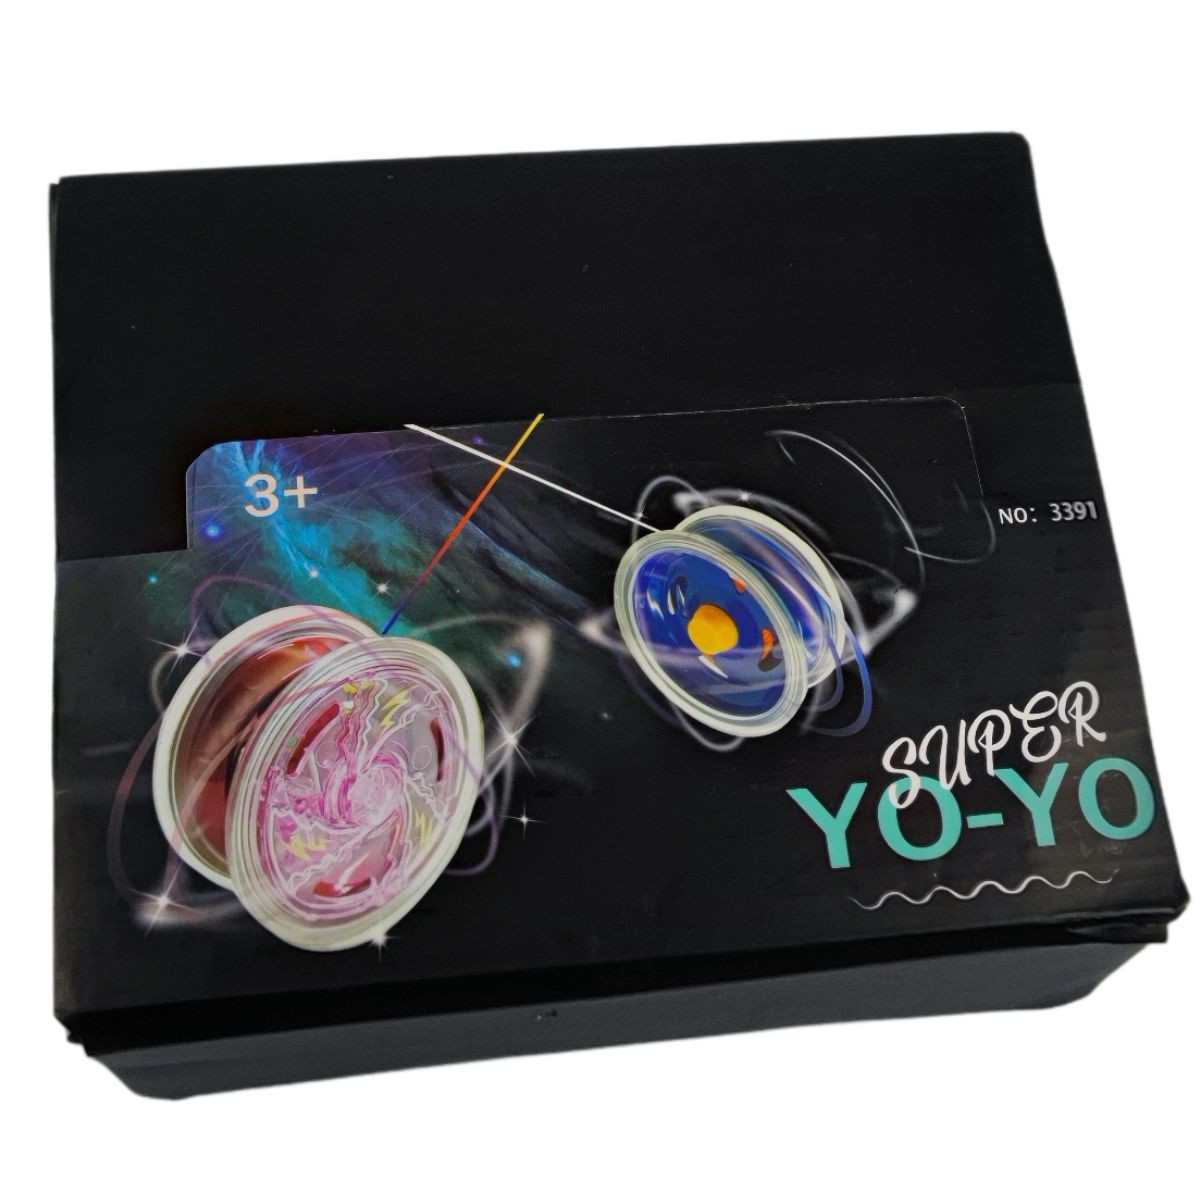 YOYO - Para comemorar o dia do ioiô, que tal aprender (ou